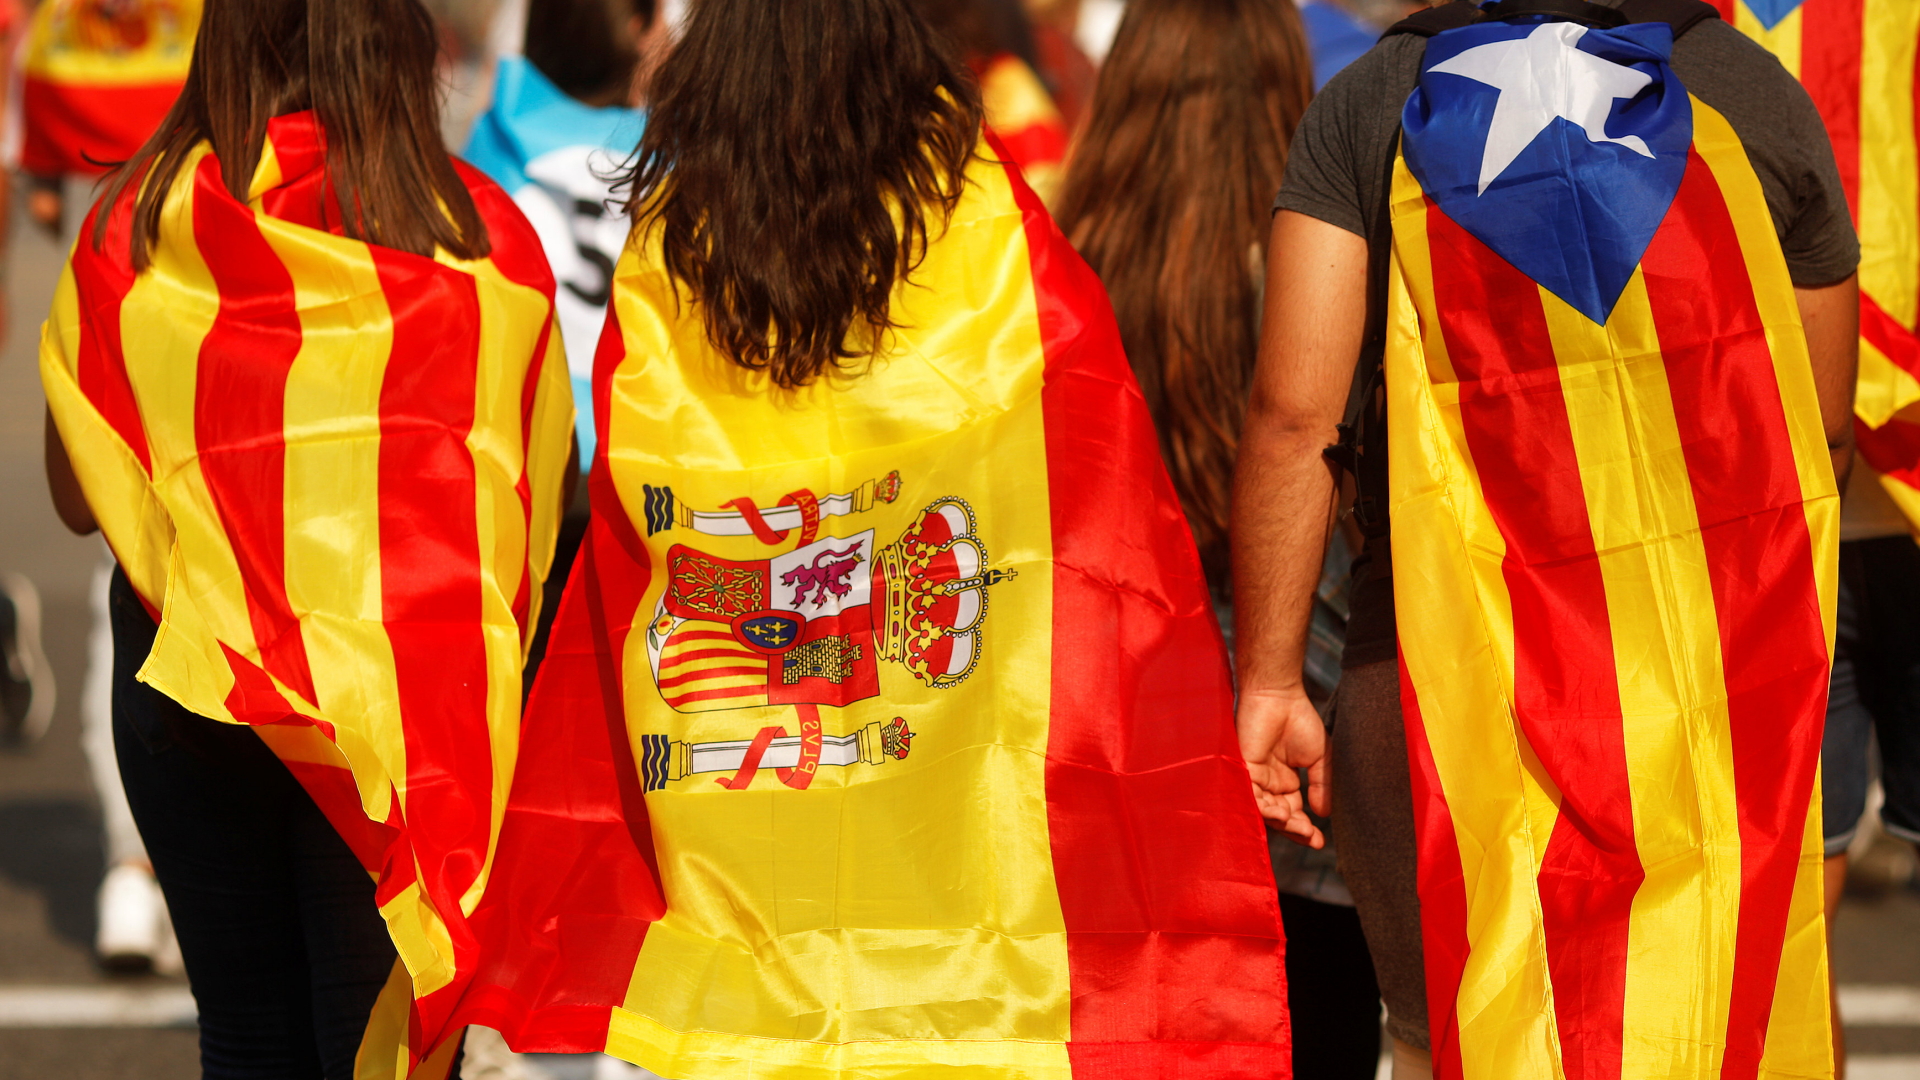 Jugendliche gehüllt in unterschiedliche Flaggen - eine spanische, eine katalonische und eine der katalonischen Unabhängigkeitsregierung